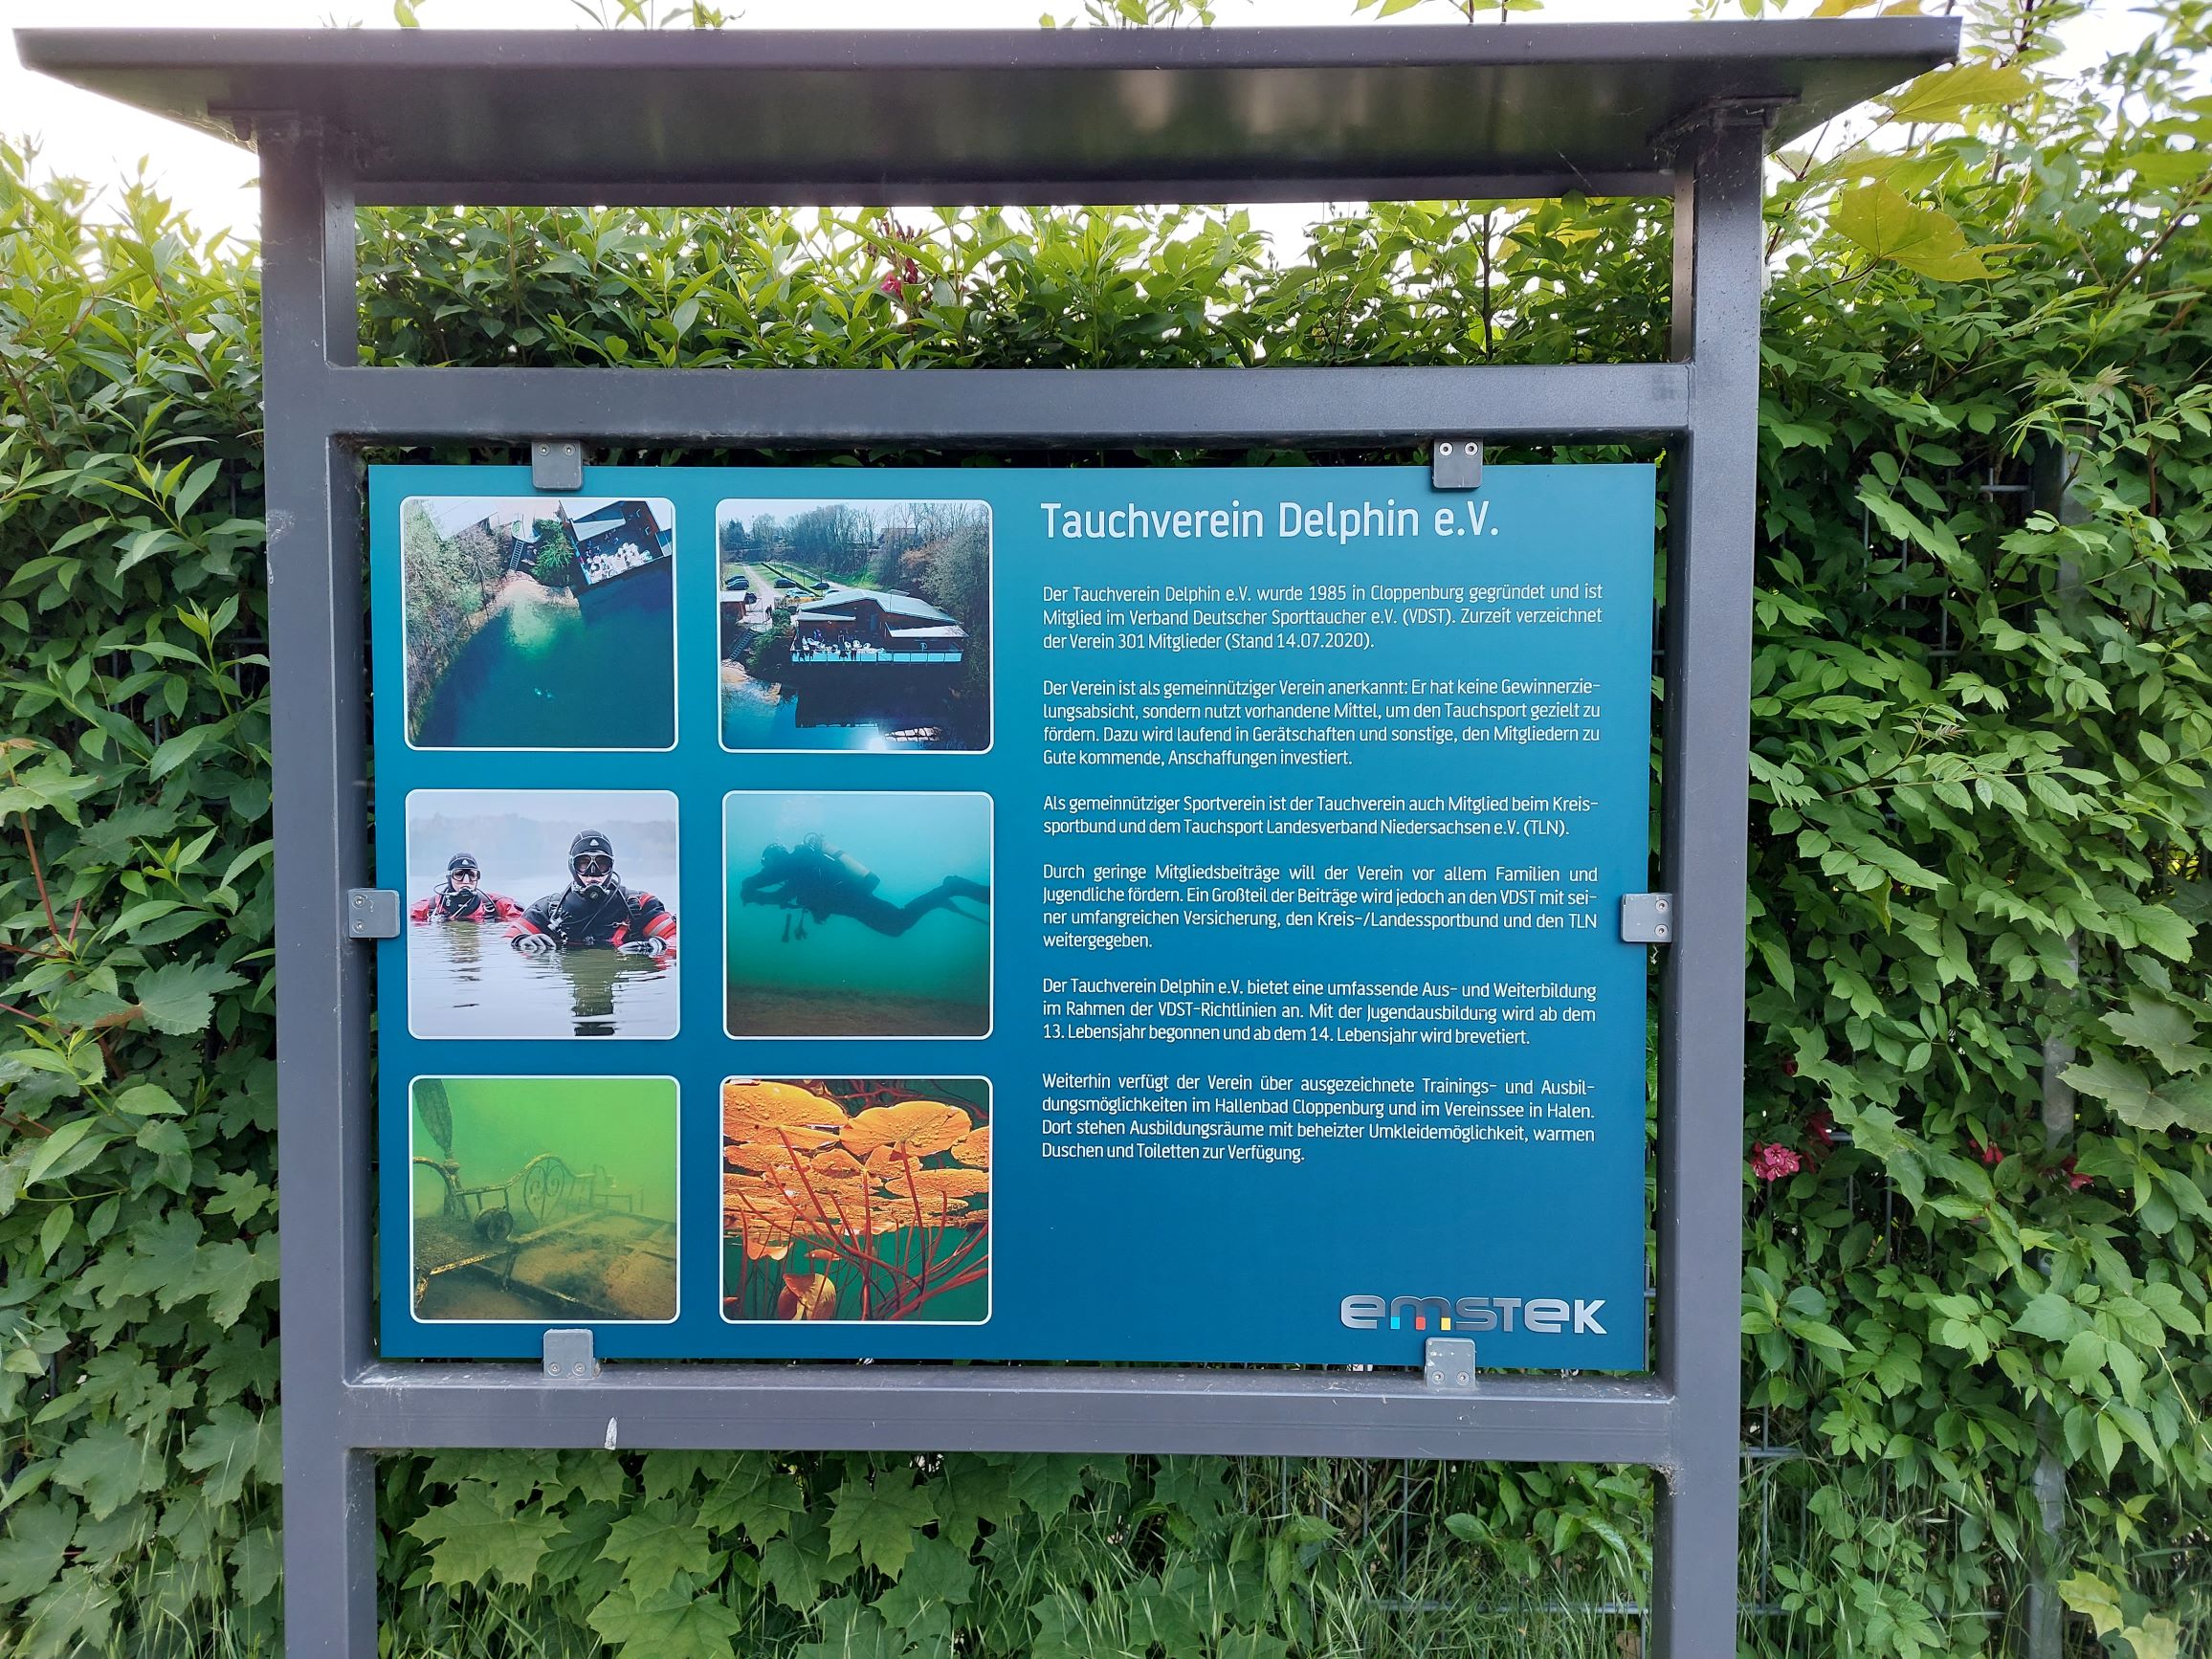 Informationstafel informiert über Tauchverein Delphin e.V. am Rundwanderweg Halener Badesee